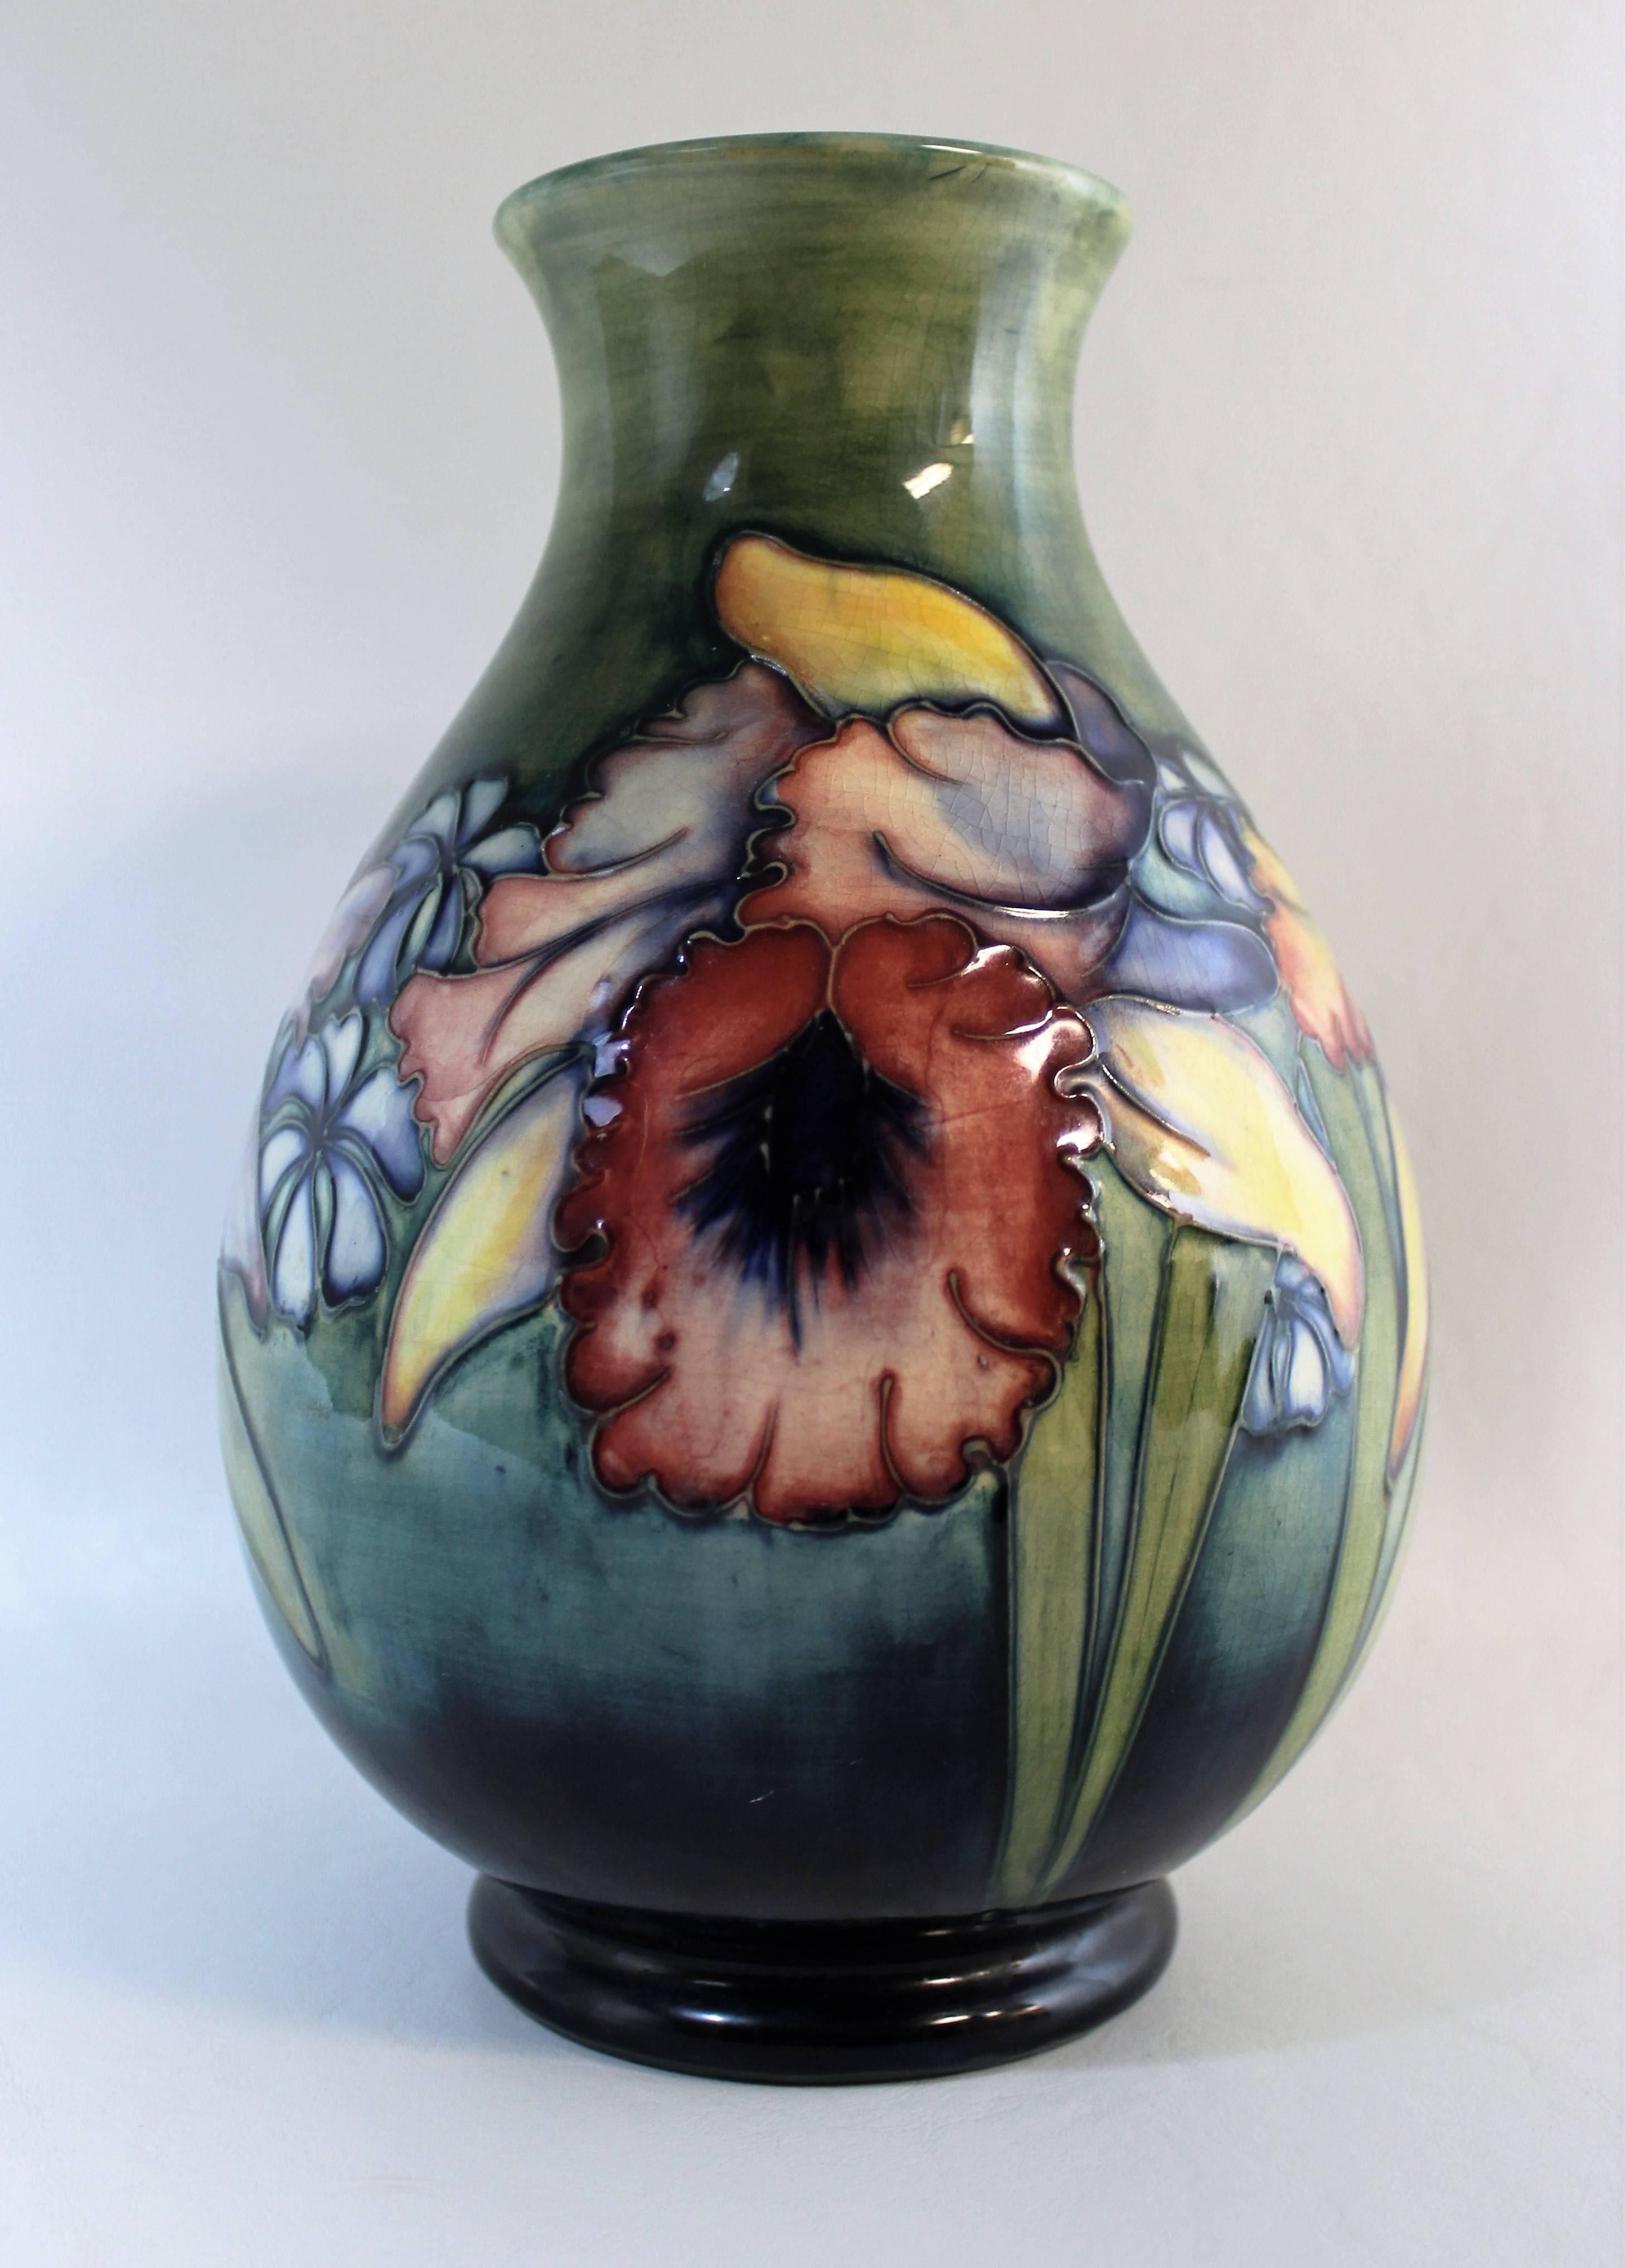 Moorcroft art pottery vase.

Signed 